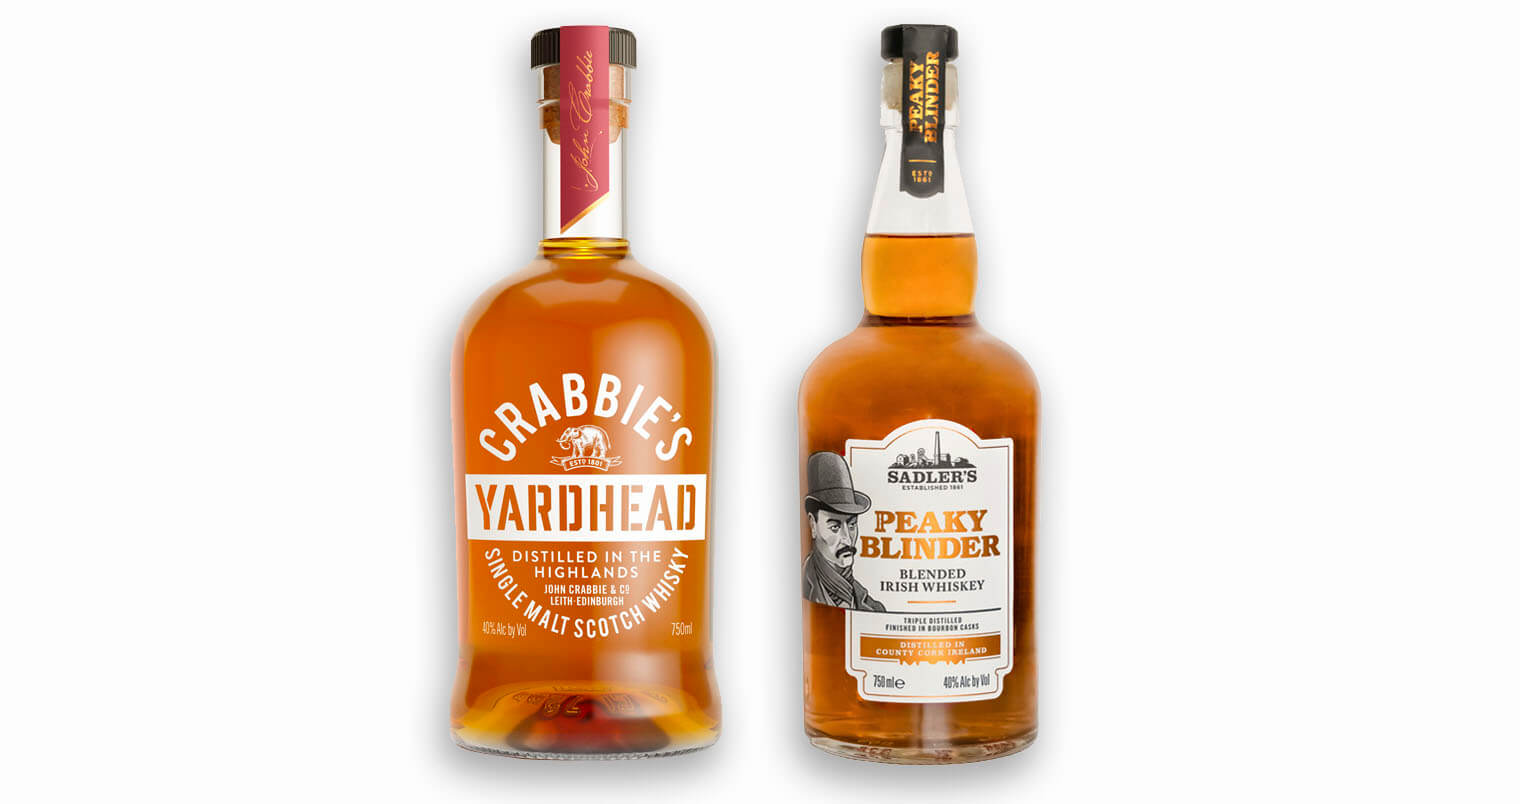 Crabbie’s Yardhead Single Malt Scotch Whisky and Peaky Blinder Irish Whiskey, bottles on white, featured image